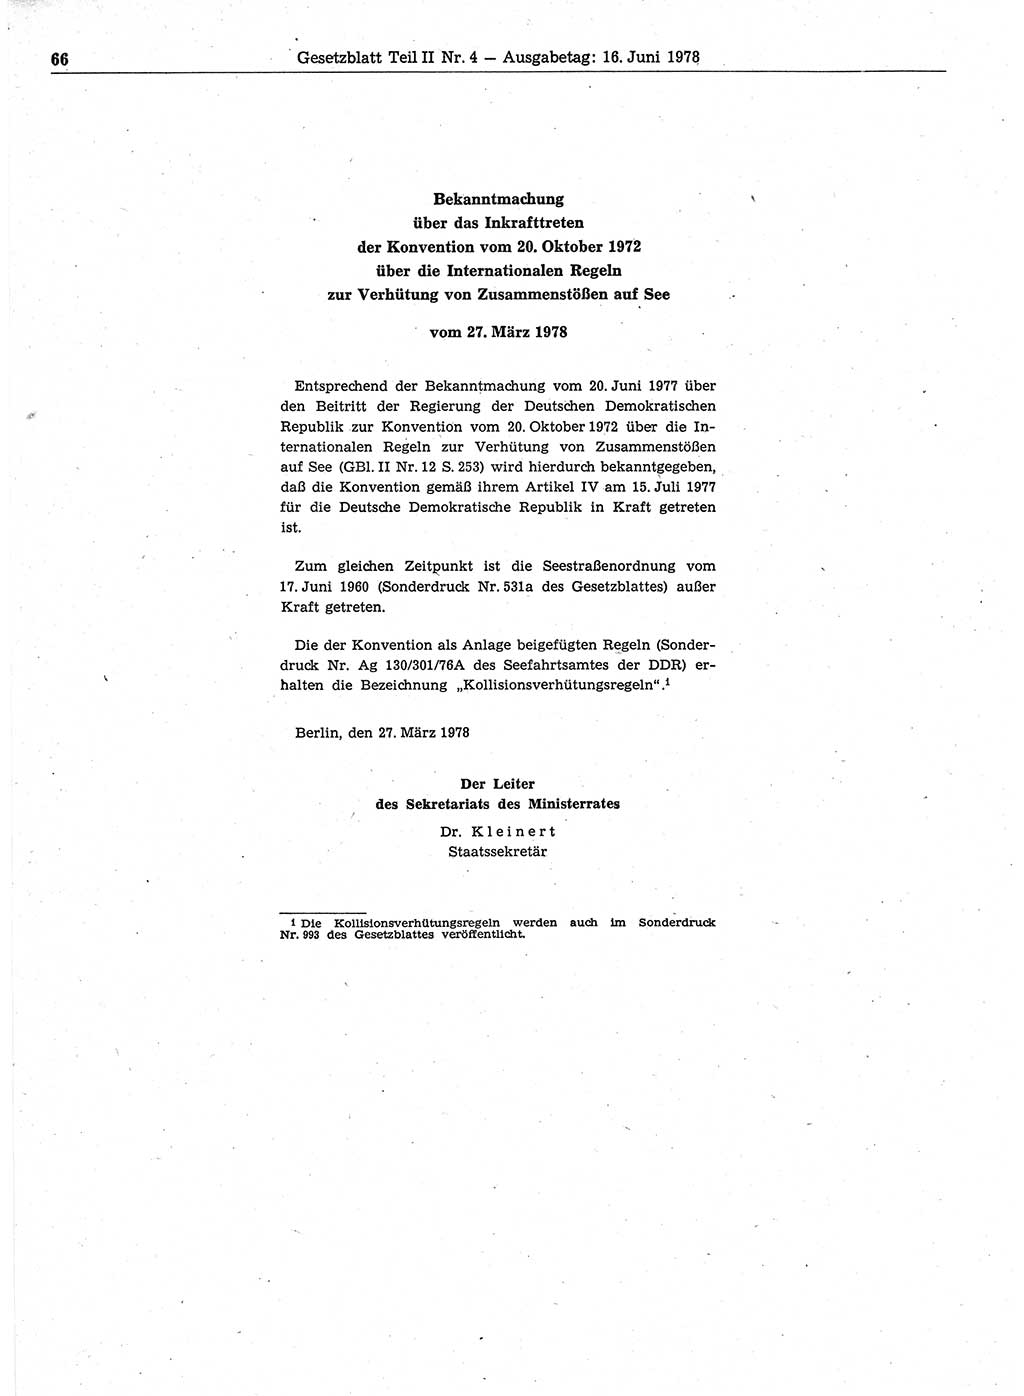 Gesetzblatt (GBl.) der Deutschen Demokratischen Republik (DDR) Teil ⅠⅠ 1978, Seite 66 (GBl. DDR ⅠⅠ 1978, S. 66)